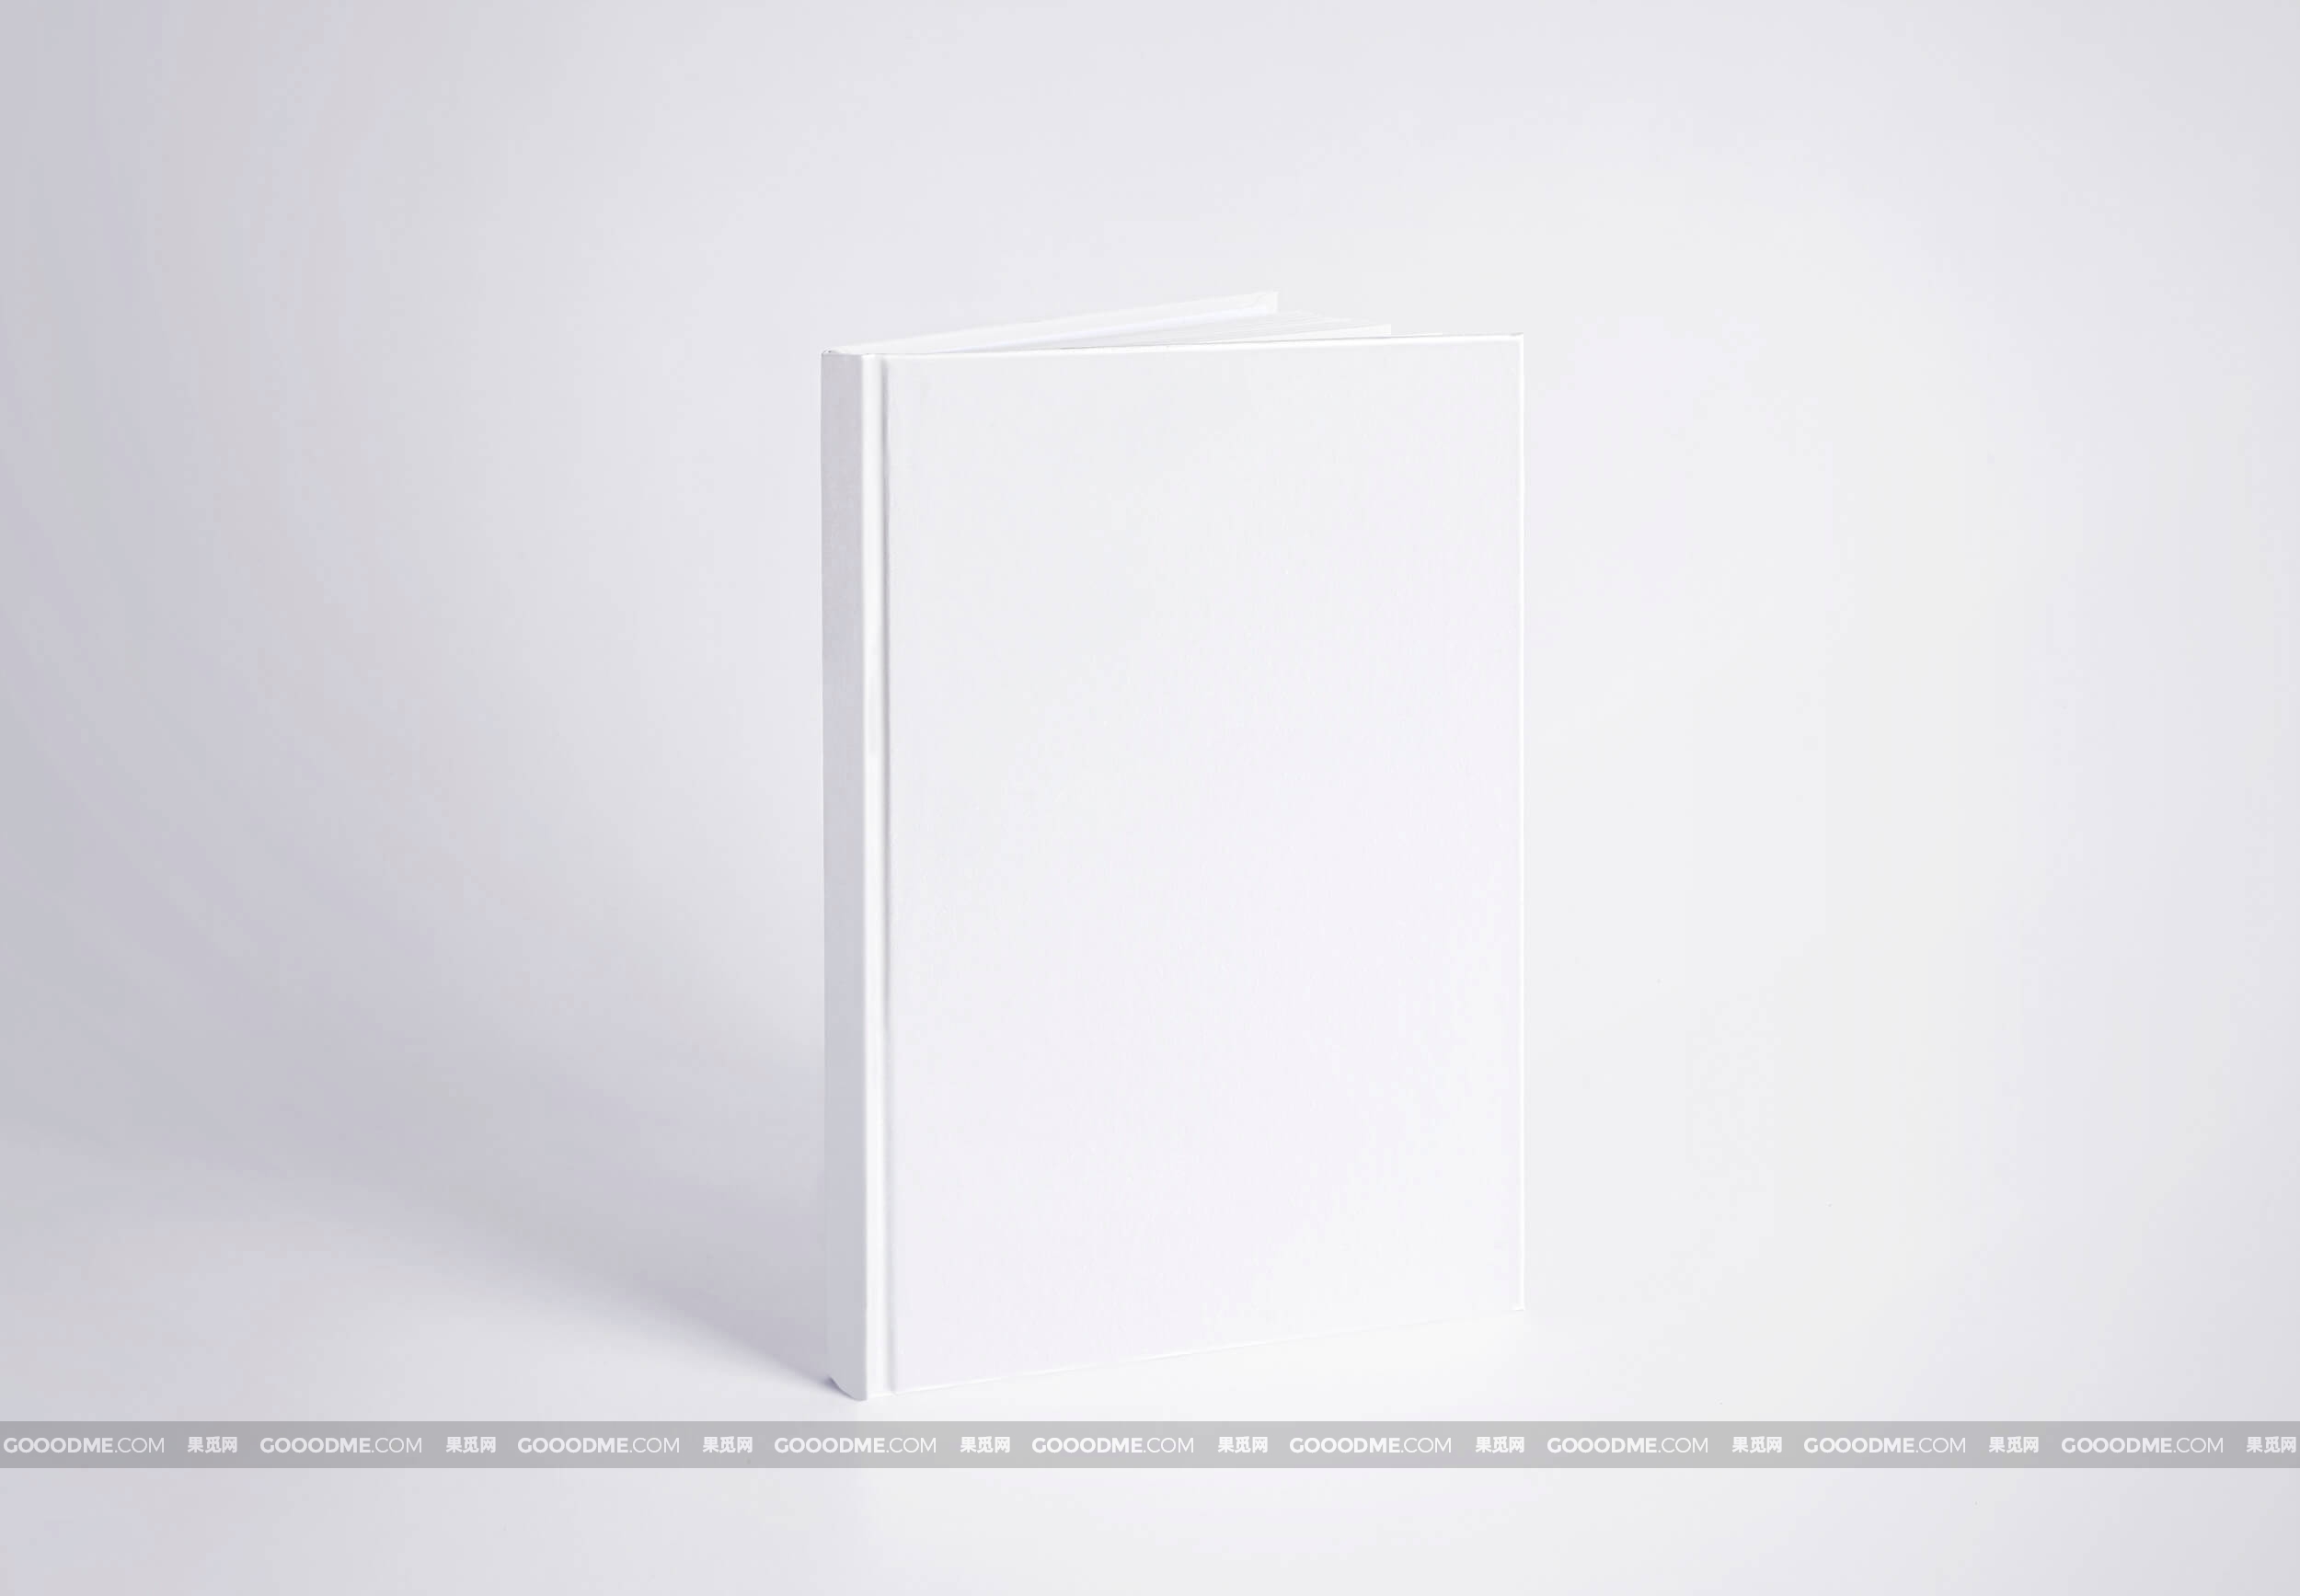 371 可商用白皮书精装硬壳书籍封面包装设计PSD样机素材 White Book Realistic Mockup